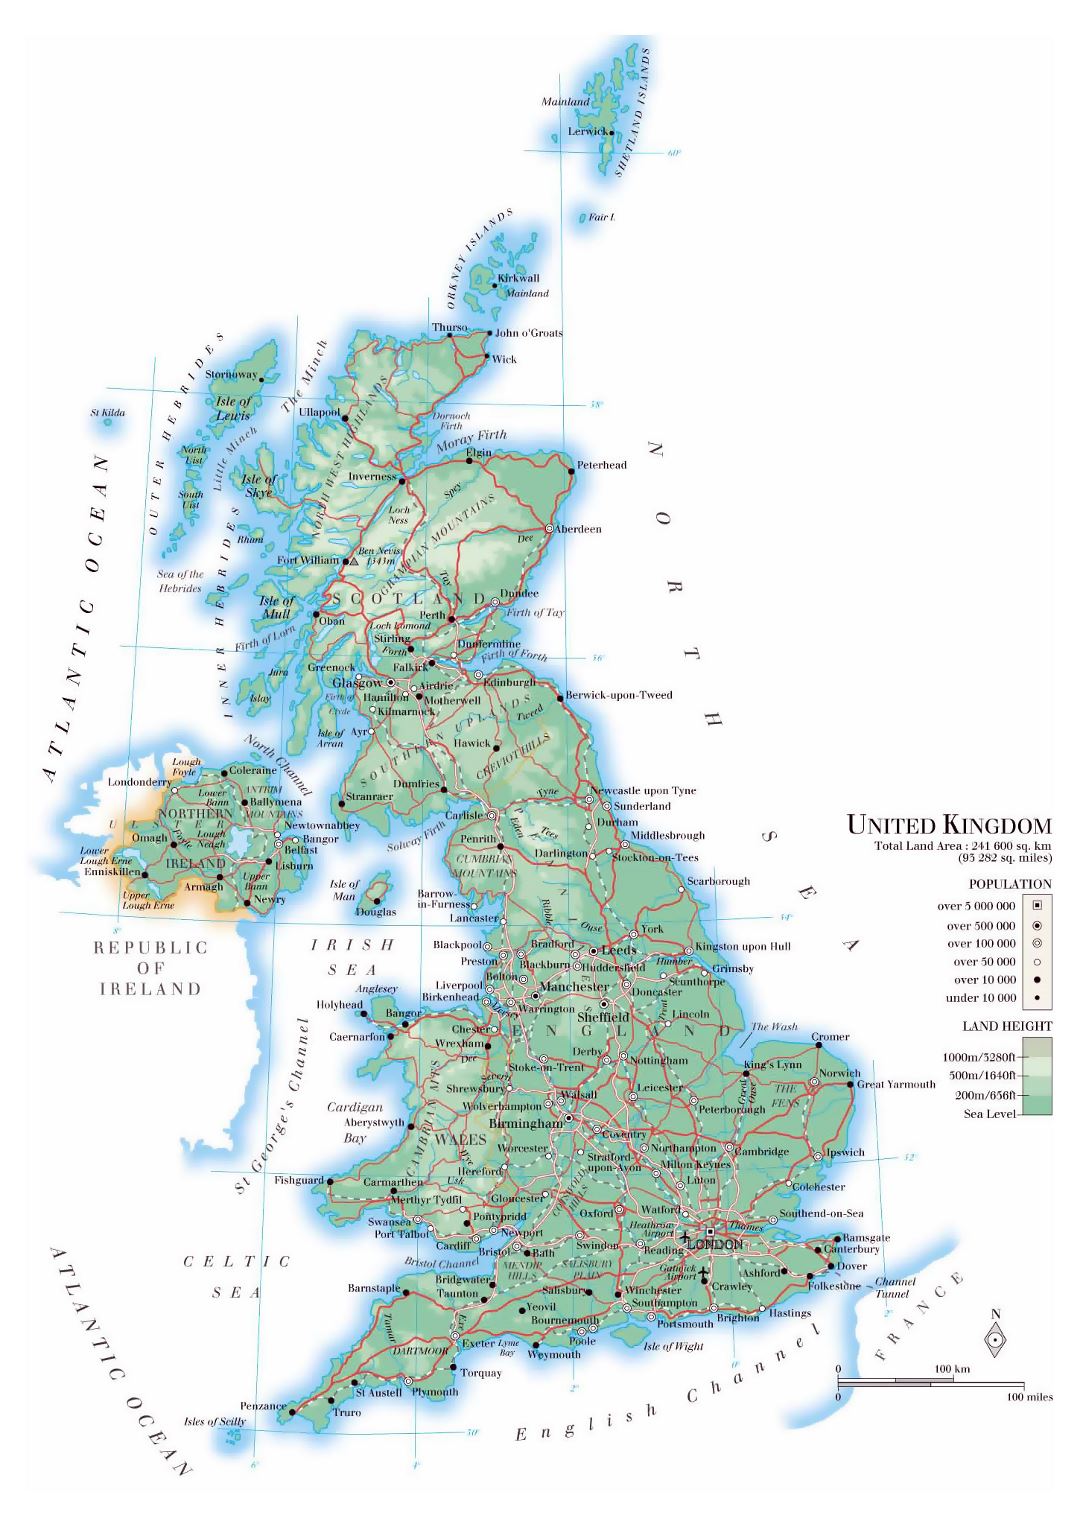 Detallado mapa físico del Reino Unido con carreteras, ciudades y aeropuertos